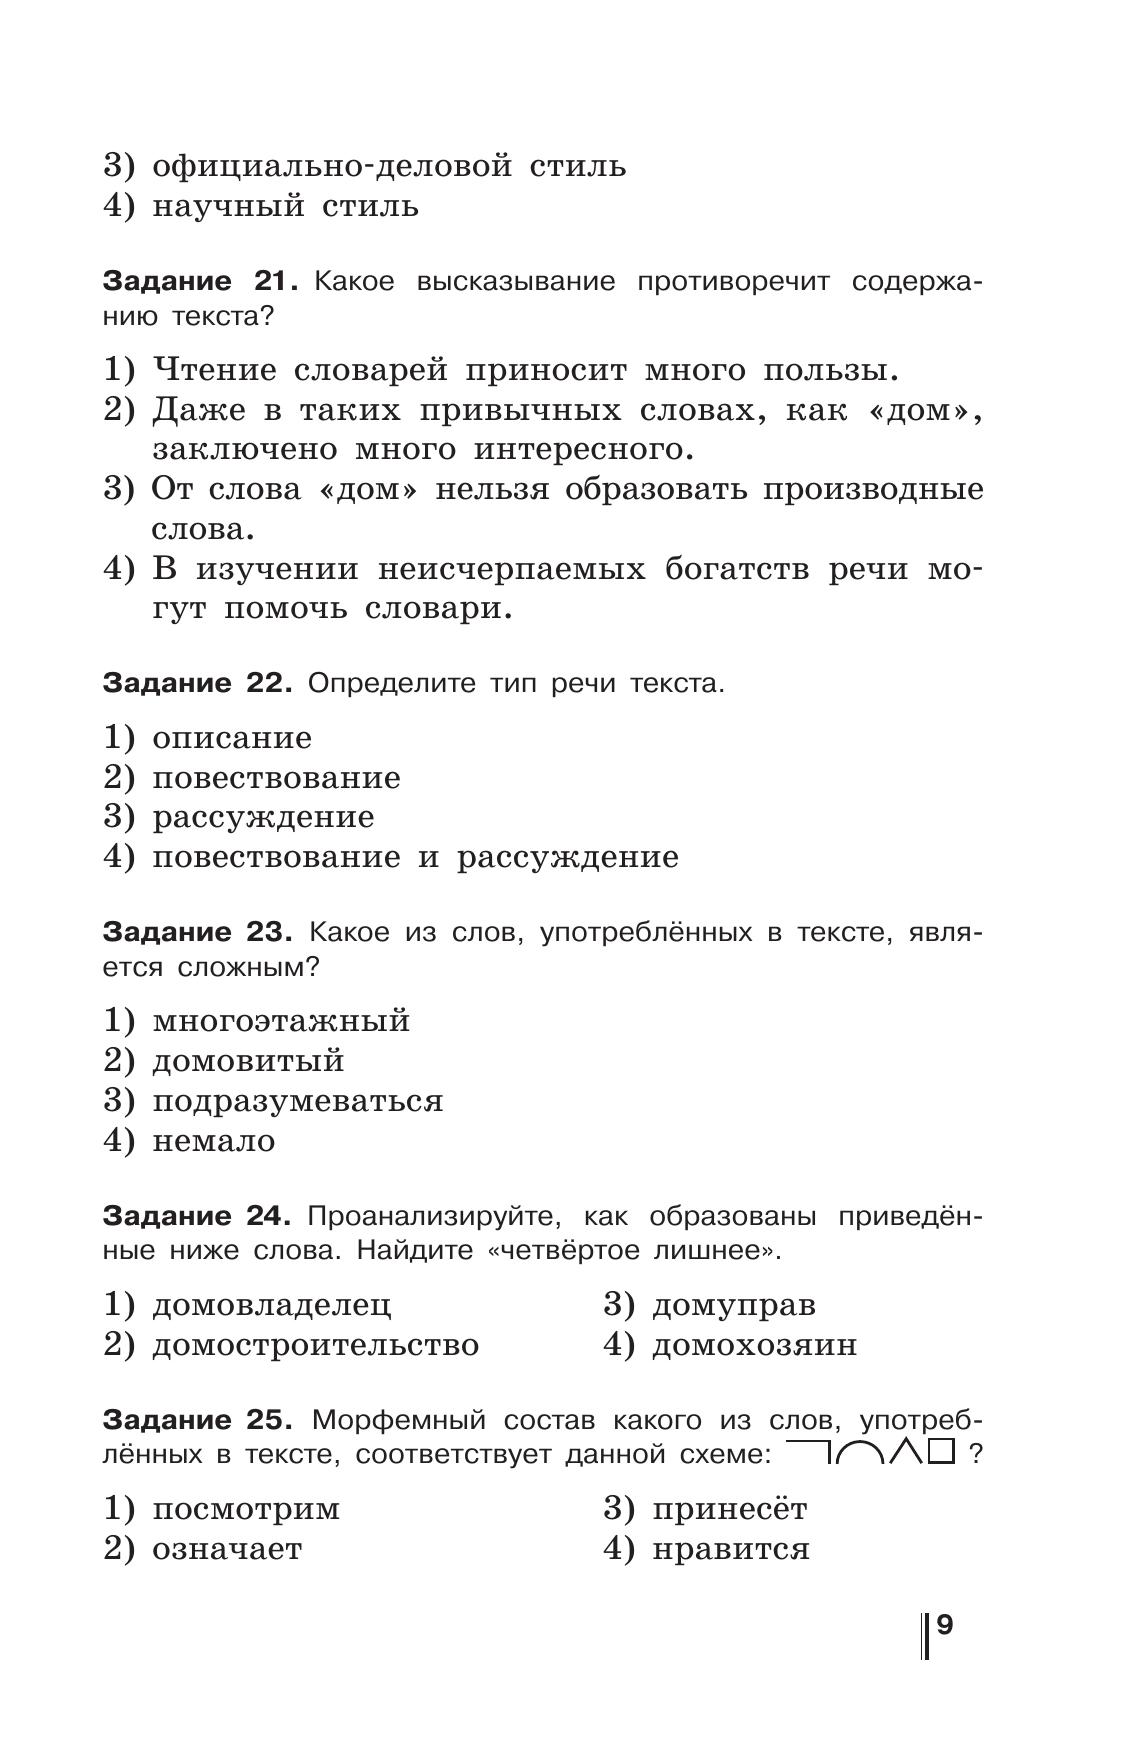 Русский язык. Готовимся к ОГЭ. Тесты, творческие работы, проекты. 6 класс 2